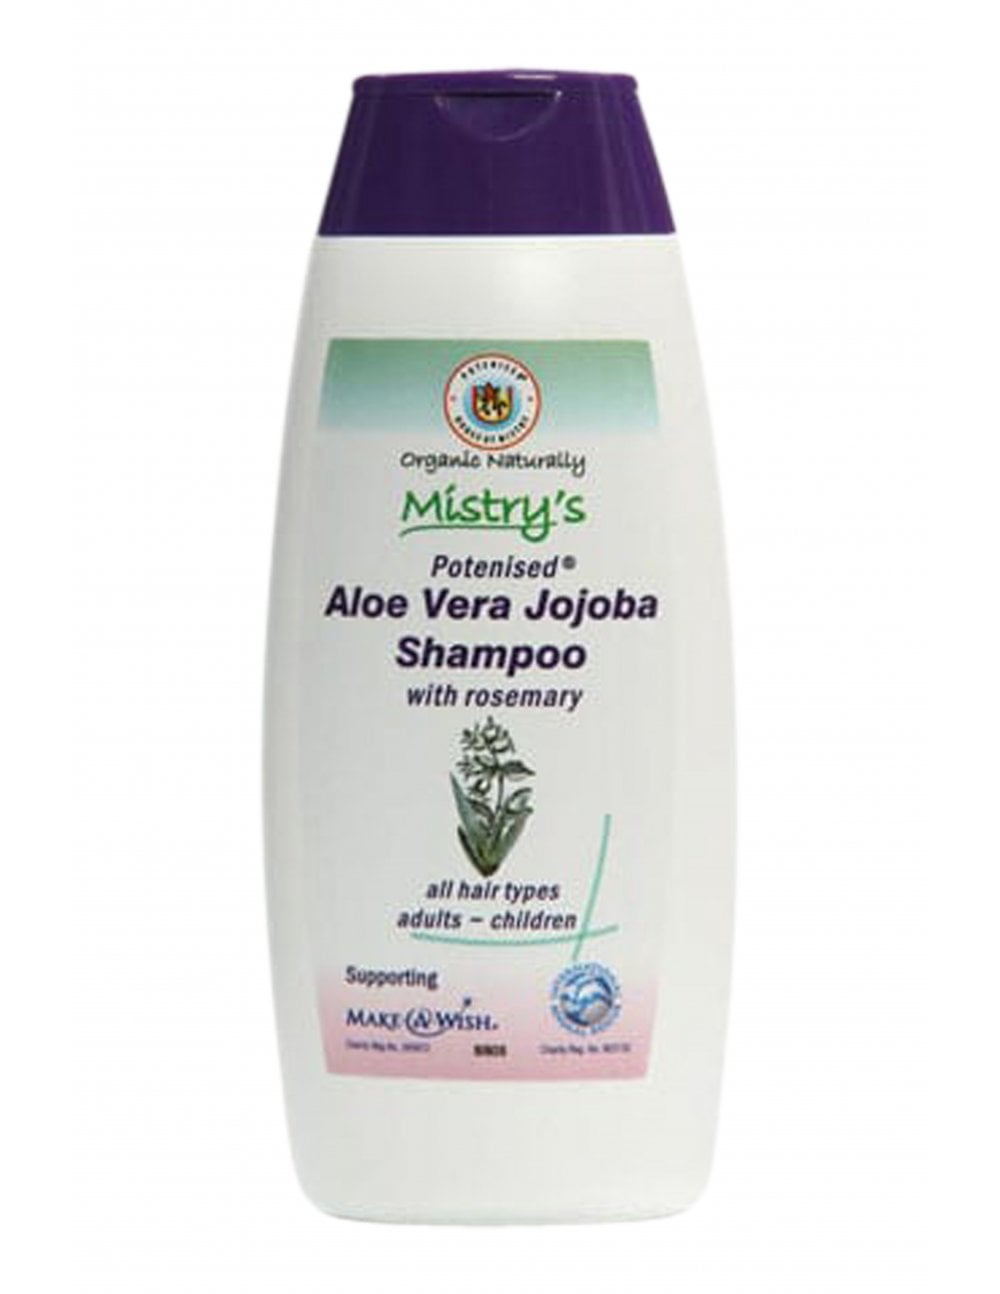 Aloe Vera Jojoba Shampoo davisfinest.com